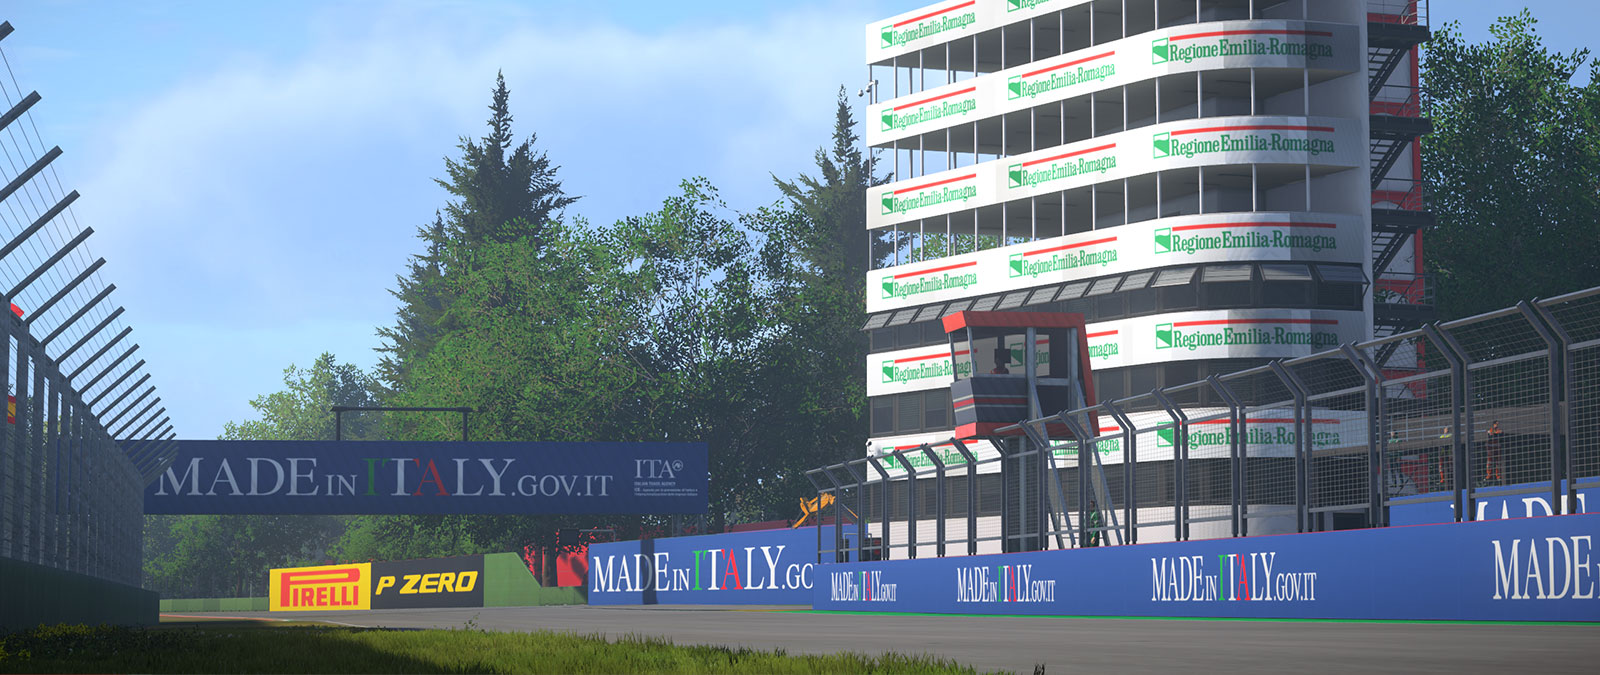 Circuit d’Imola accompagné d’un immeuble avec de nombreux balcons au-dessus d’un mur sponsorisé par Made In Italy